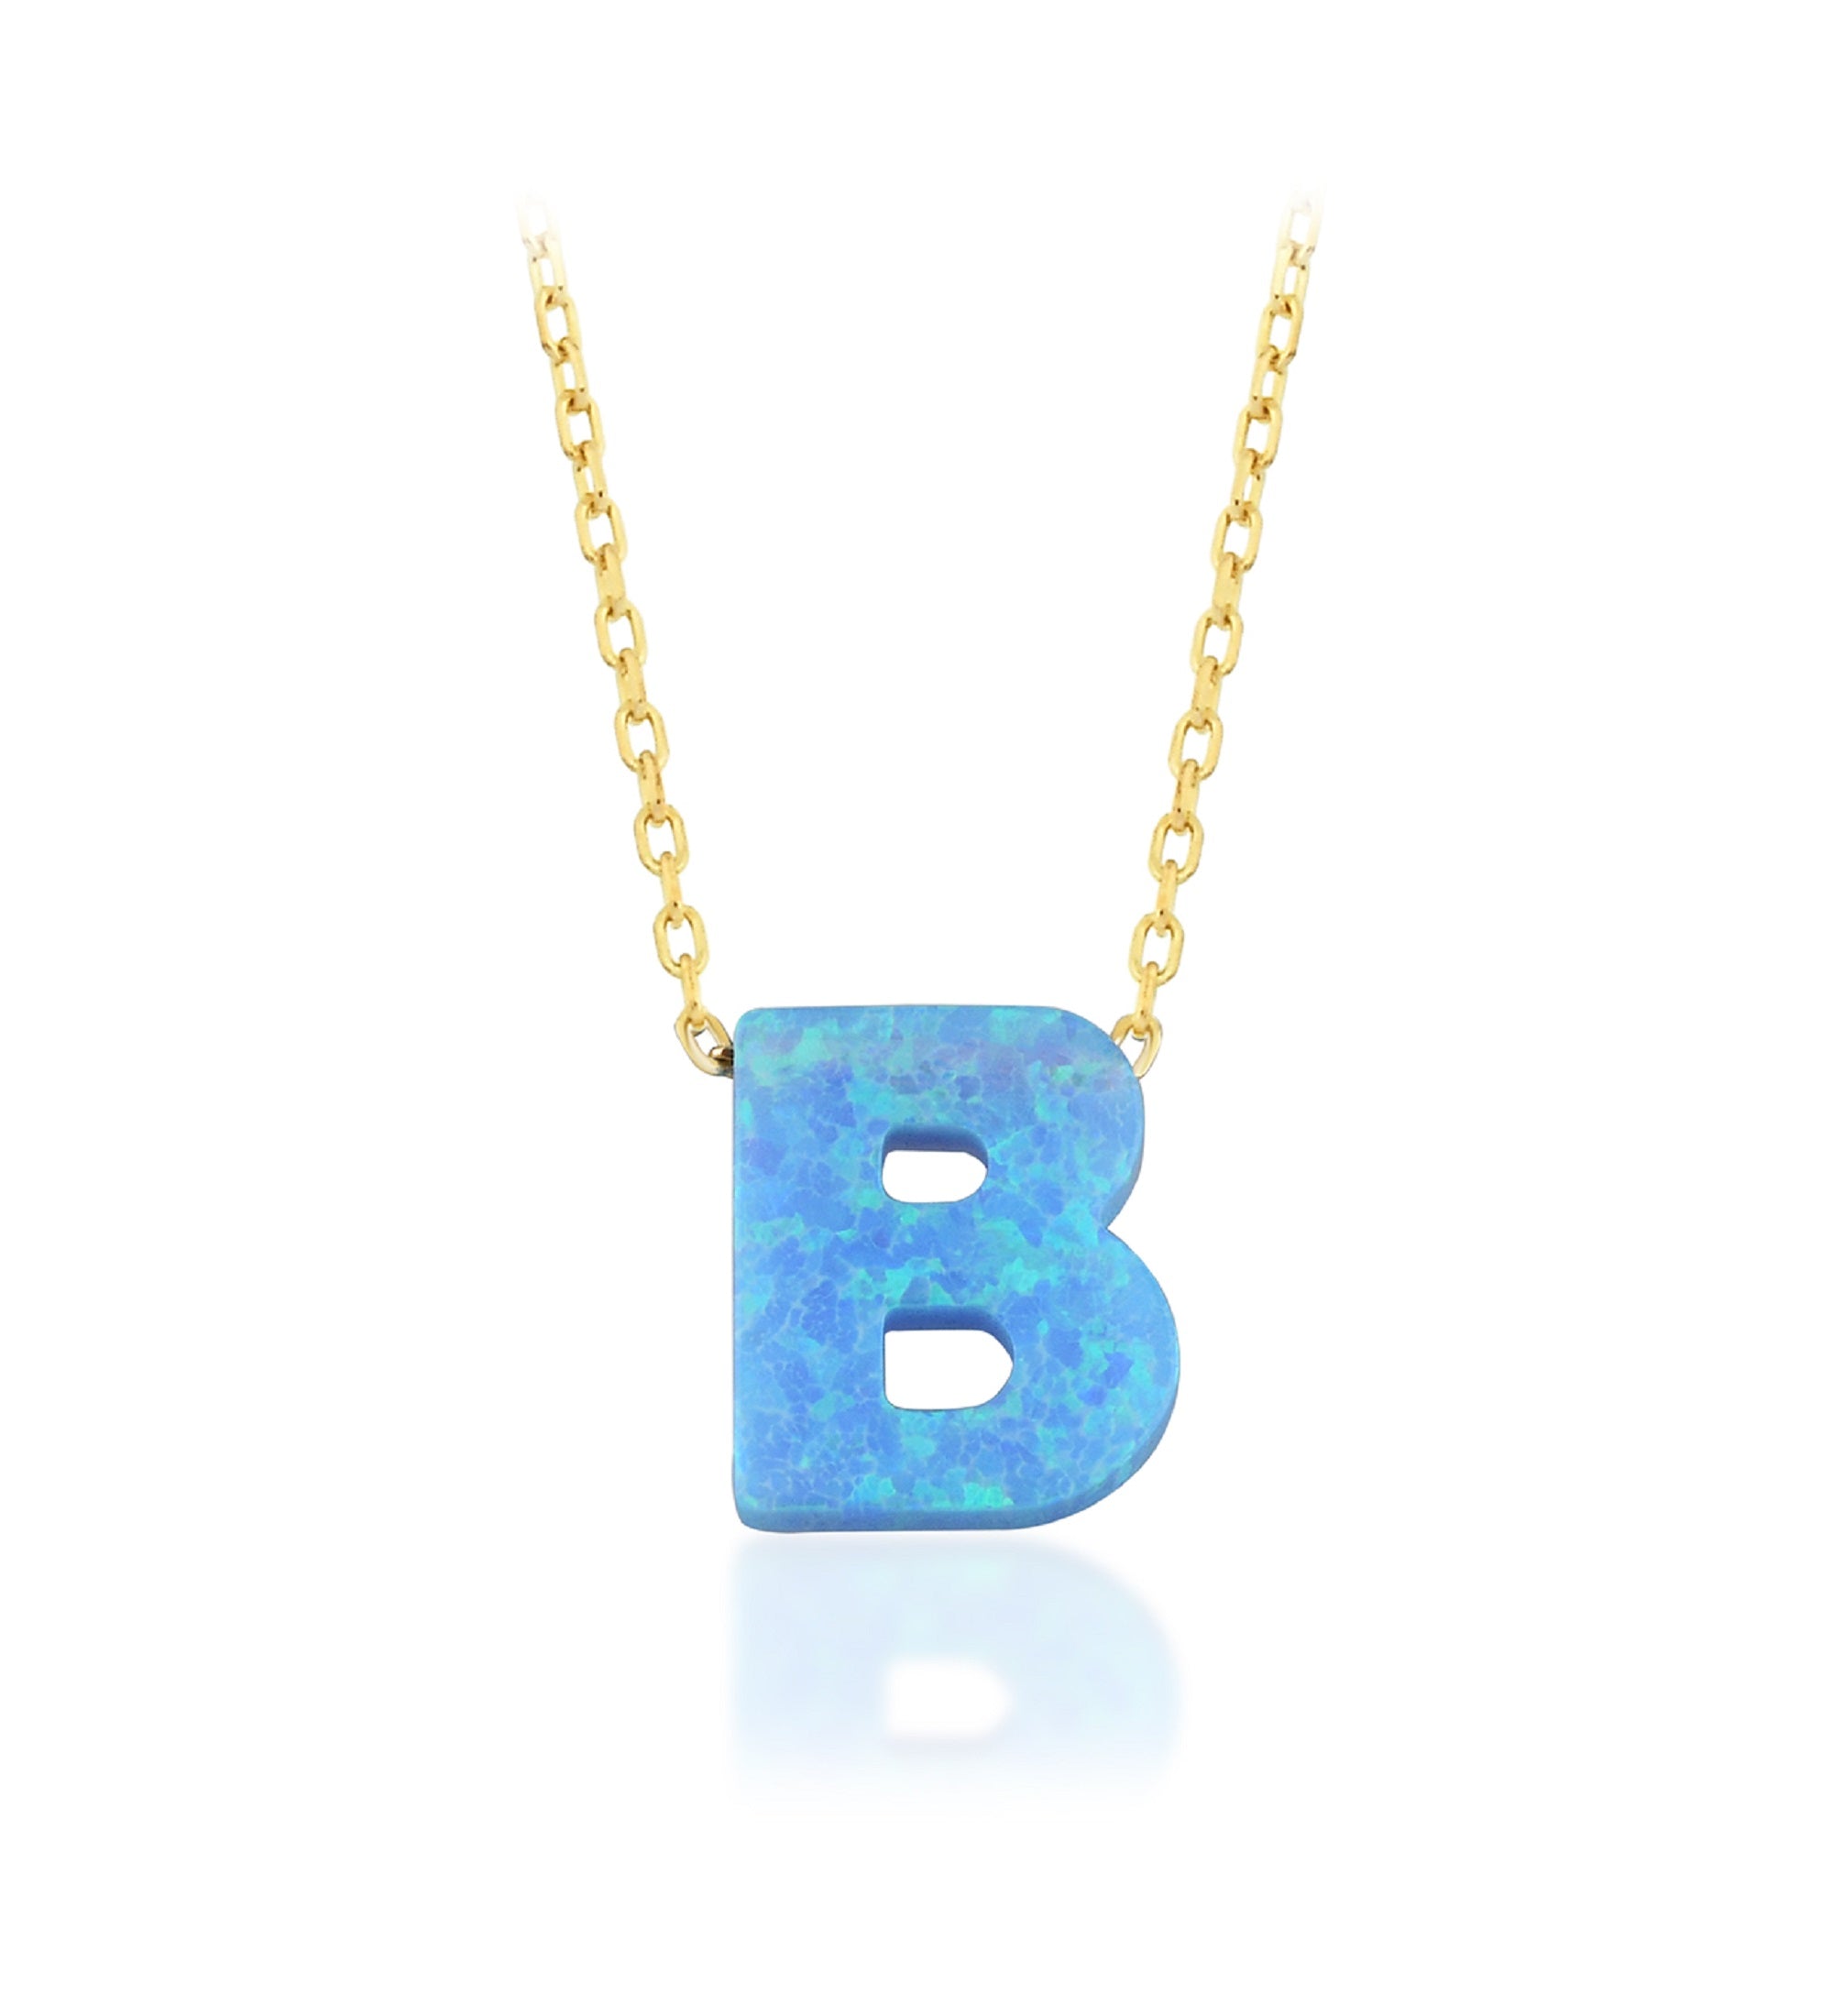 Blue Opal Initial Necklace - B letter Pendant